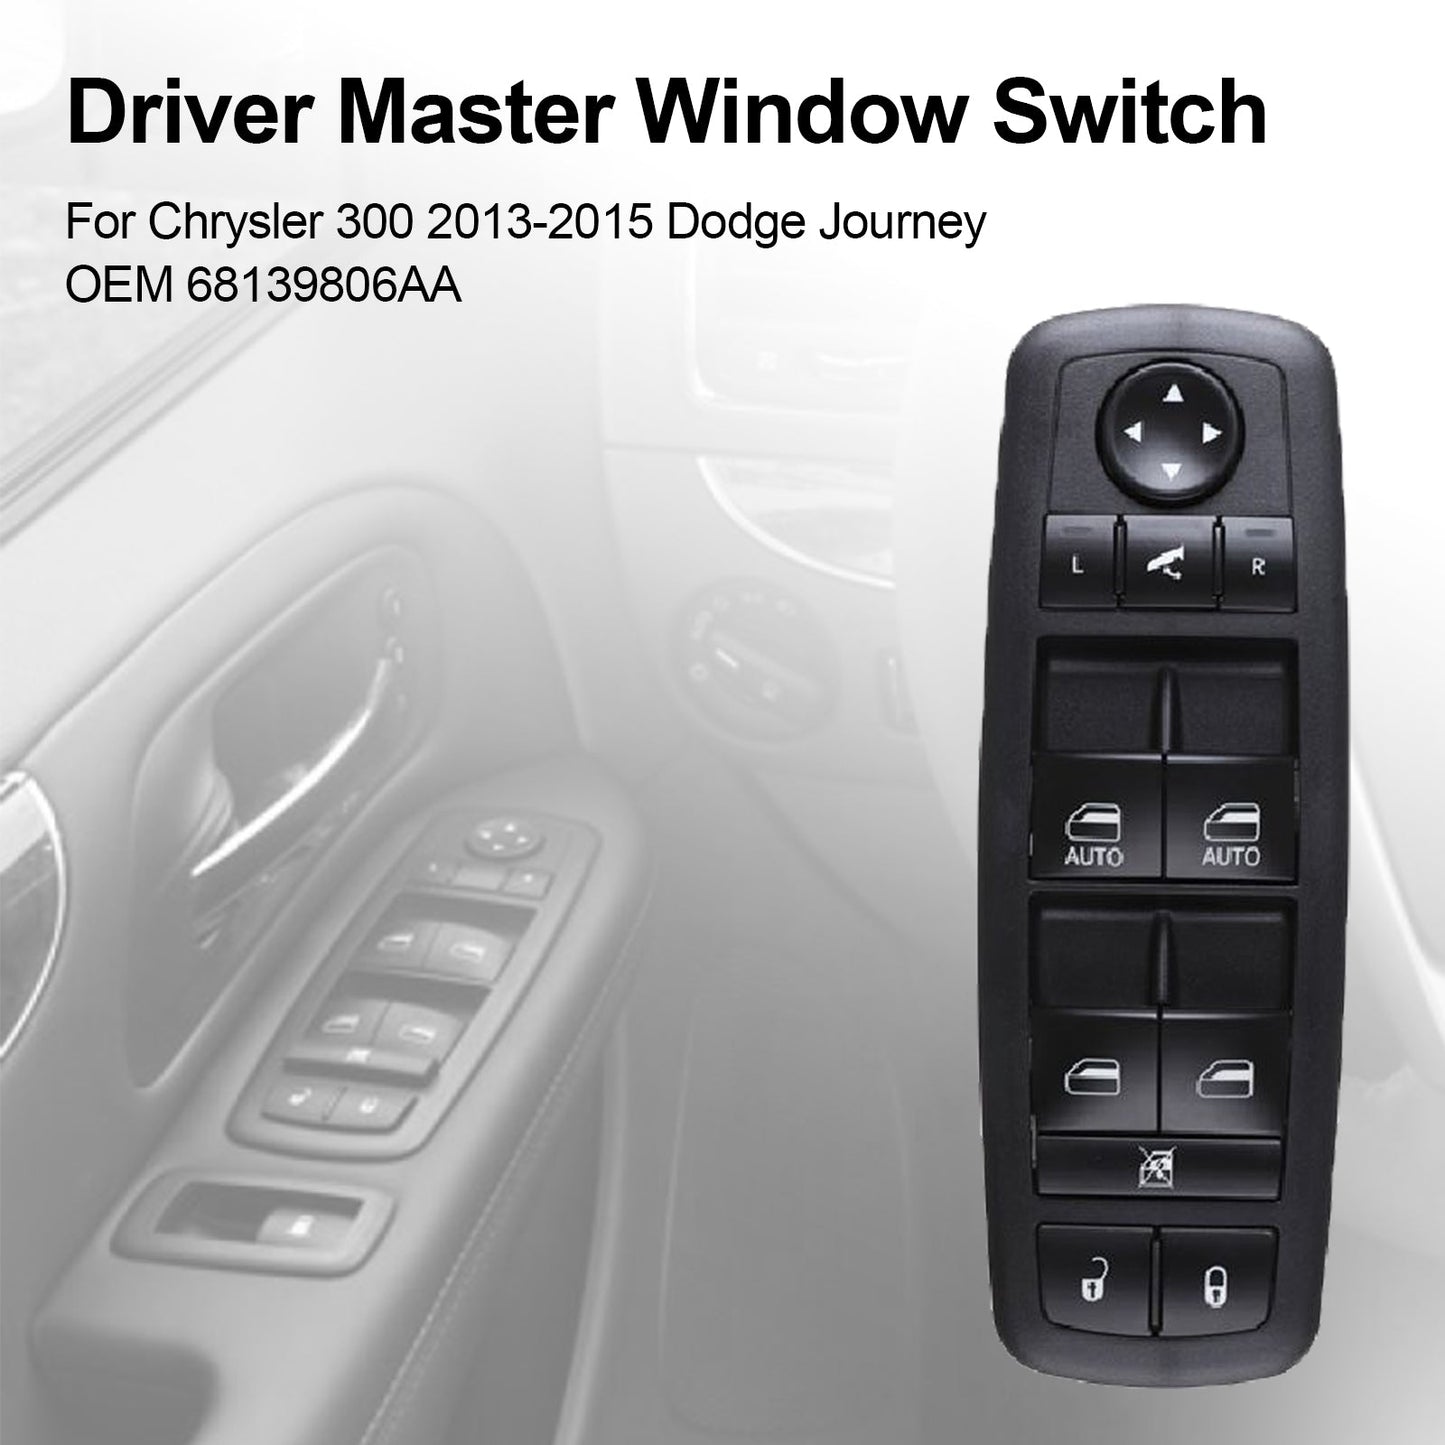 Commutateur de fenêtre principal conducteur pour Chrysler 300 2013-2015 Dodge Journey 68139806aa générique